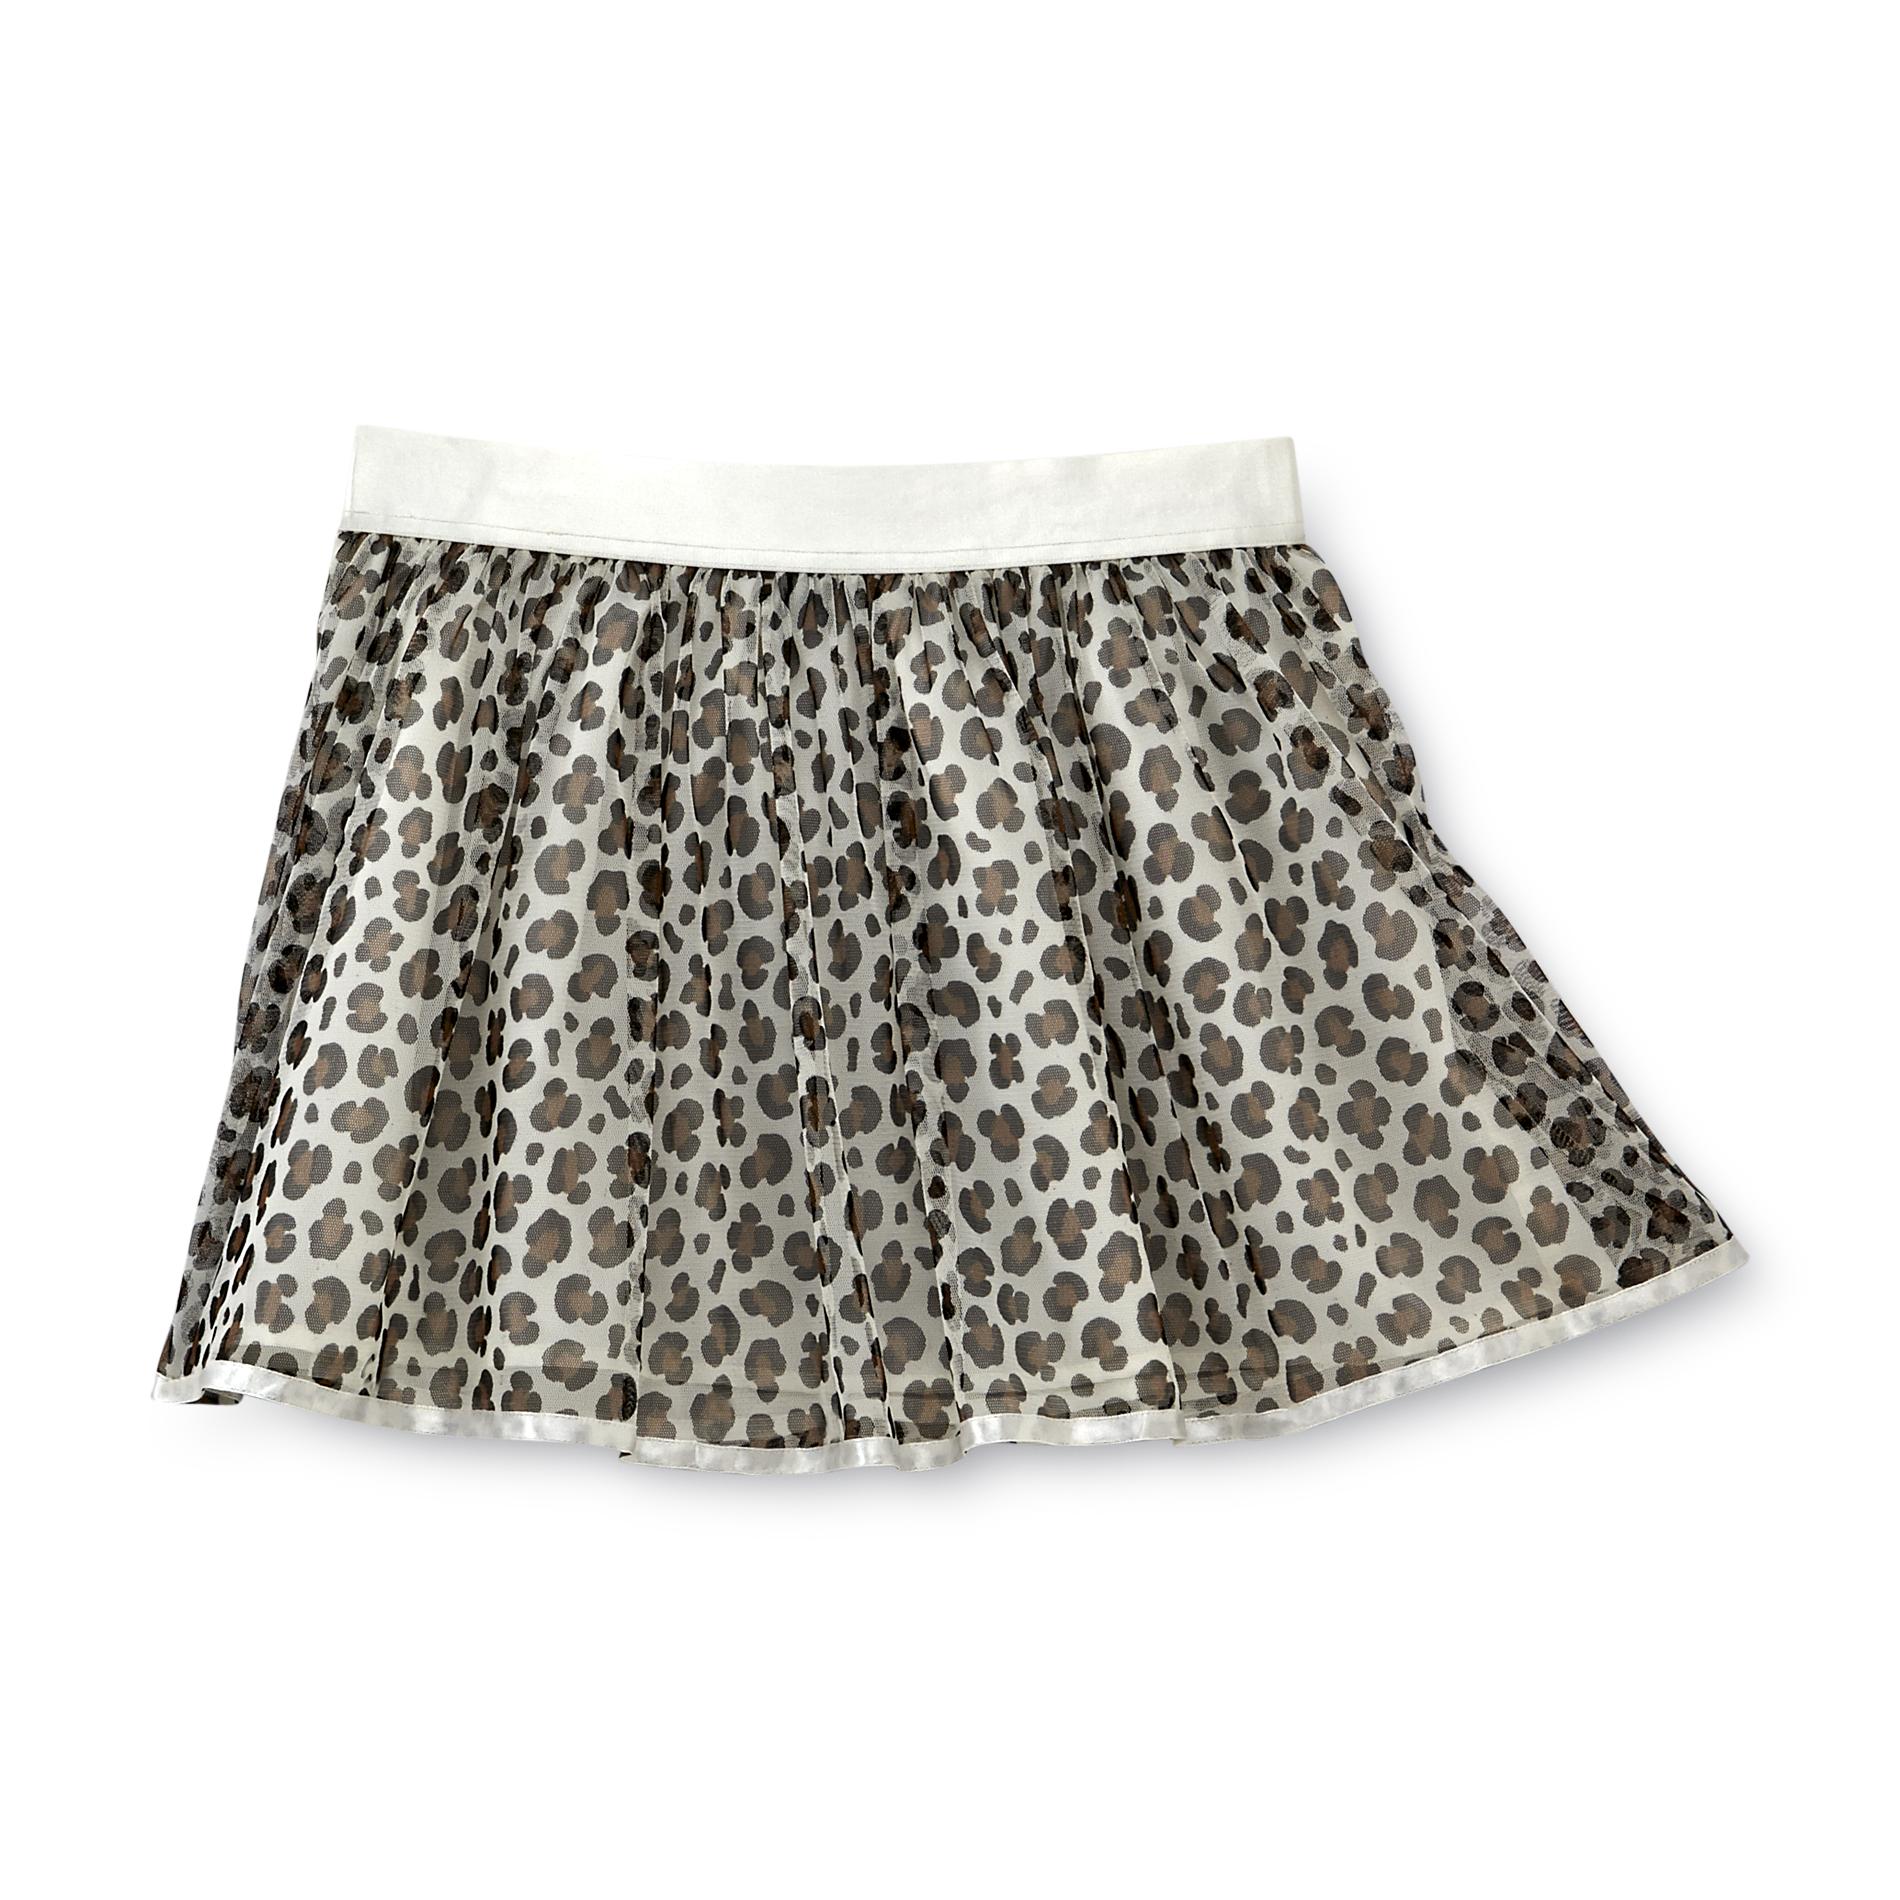 Basic Editions Girl's Skater Skirt - Leopard